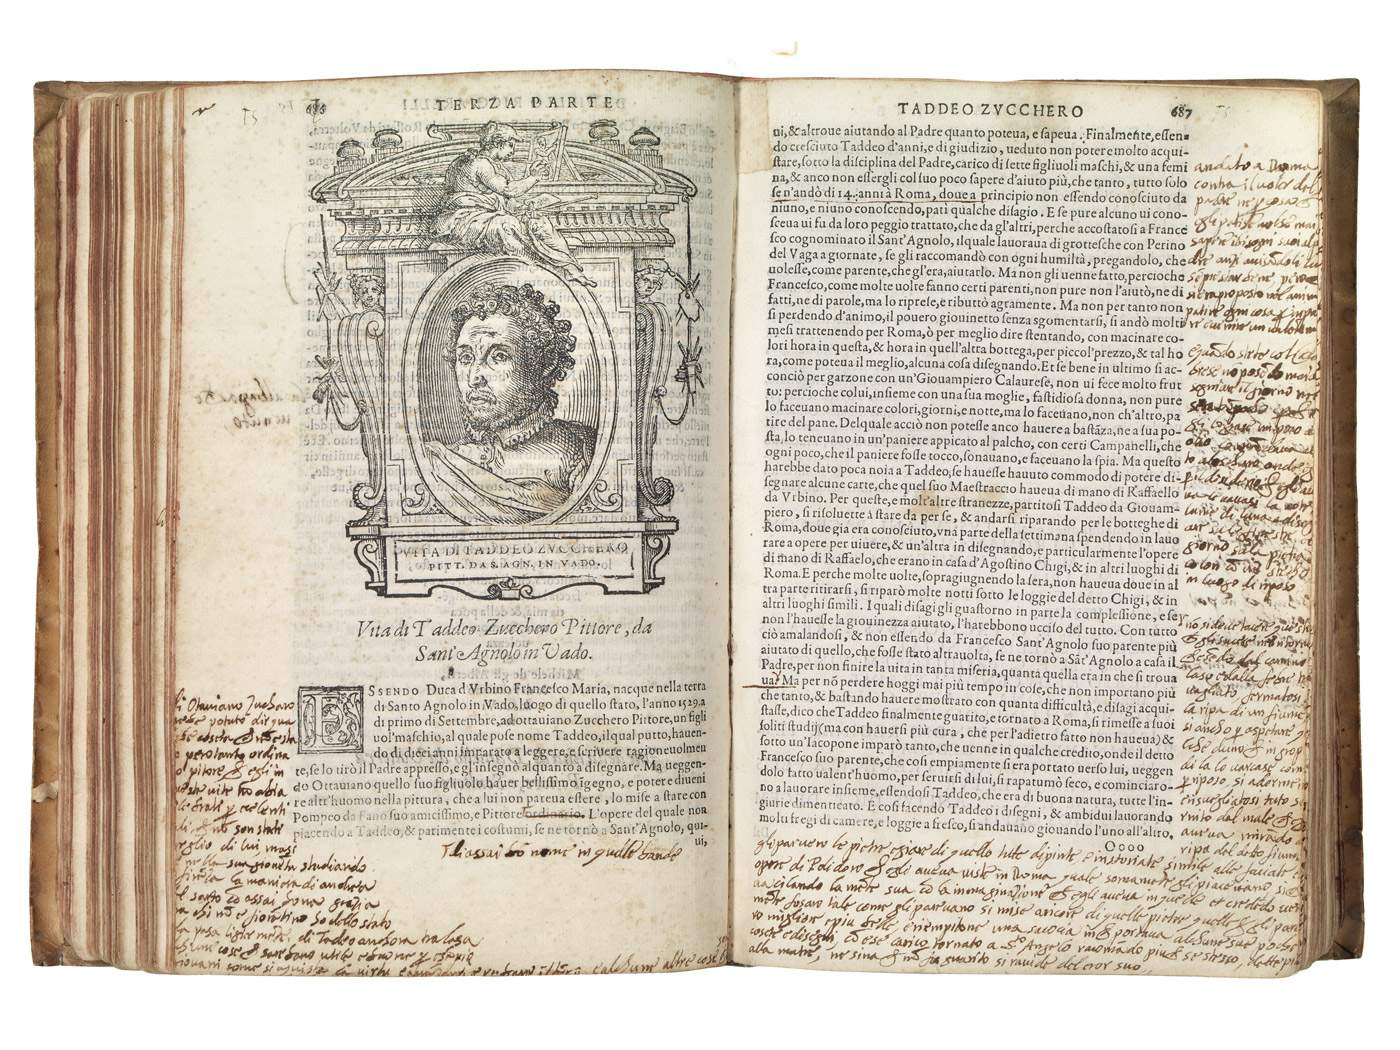 Aux enchères, une rare première édition des Vies de Vasari, avec des notes de Federico Zuccari. 